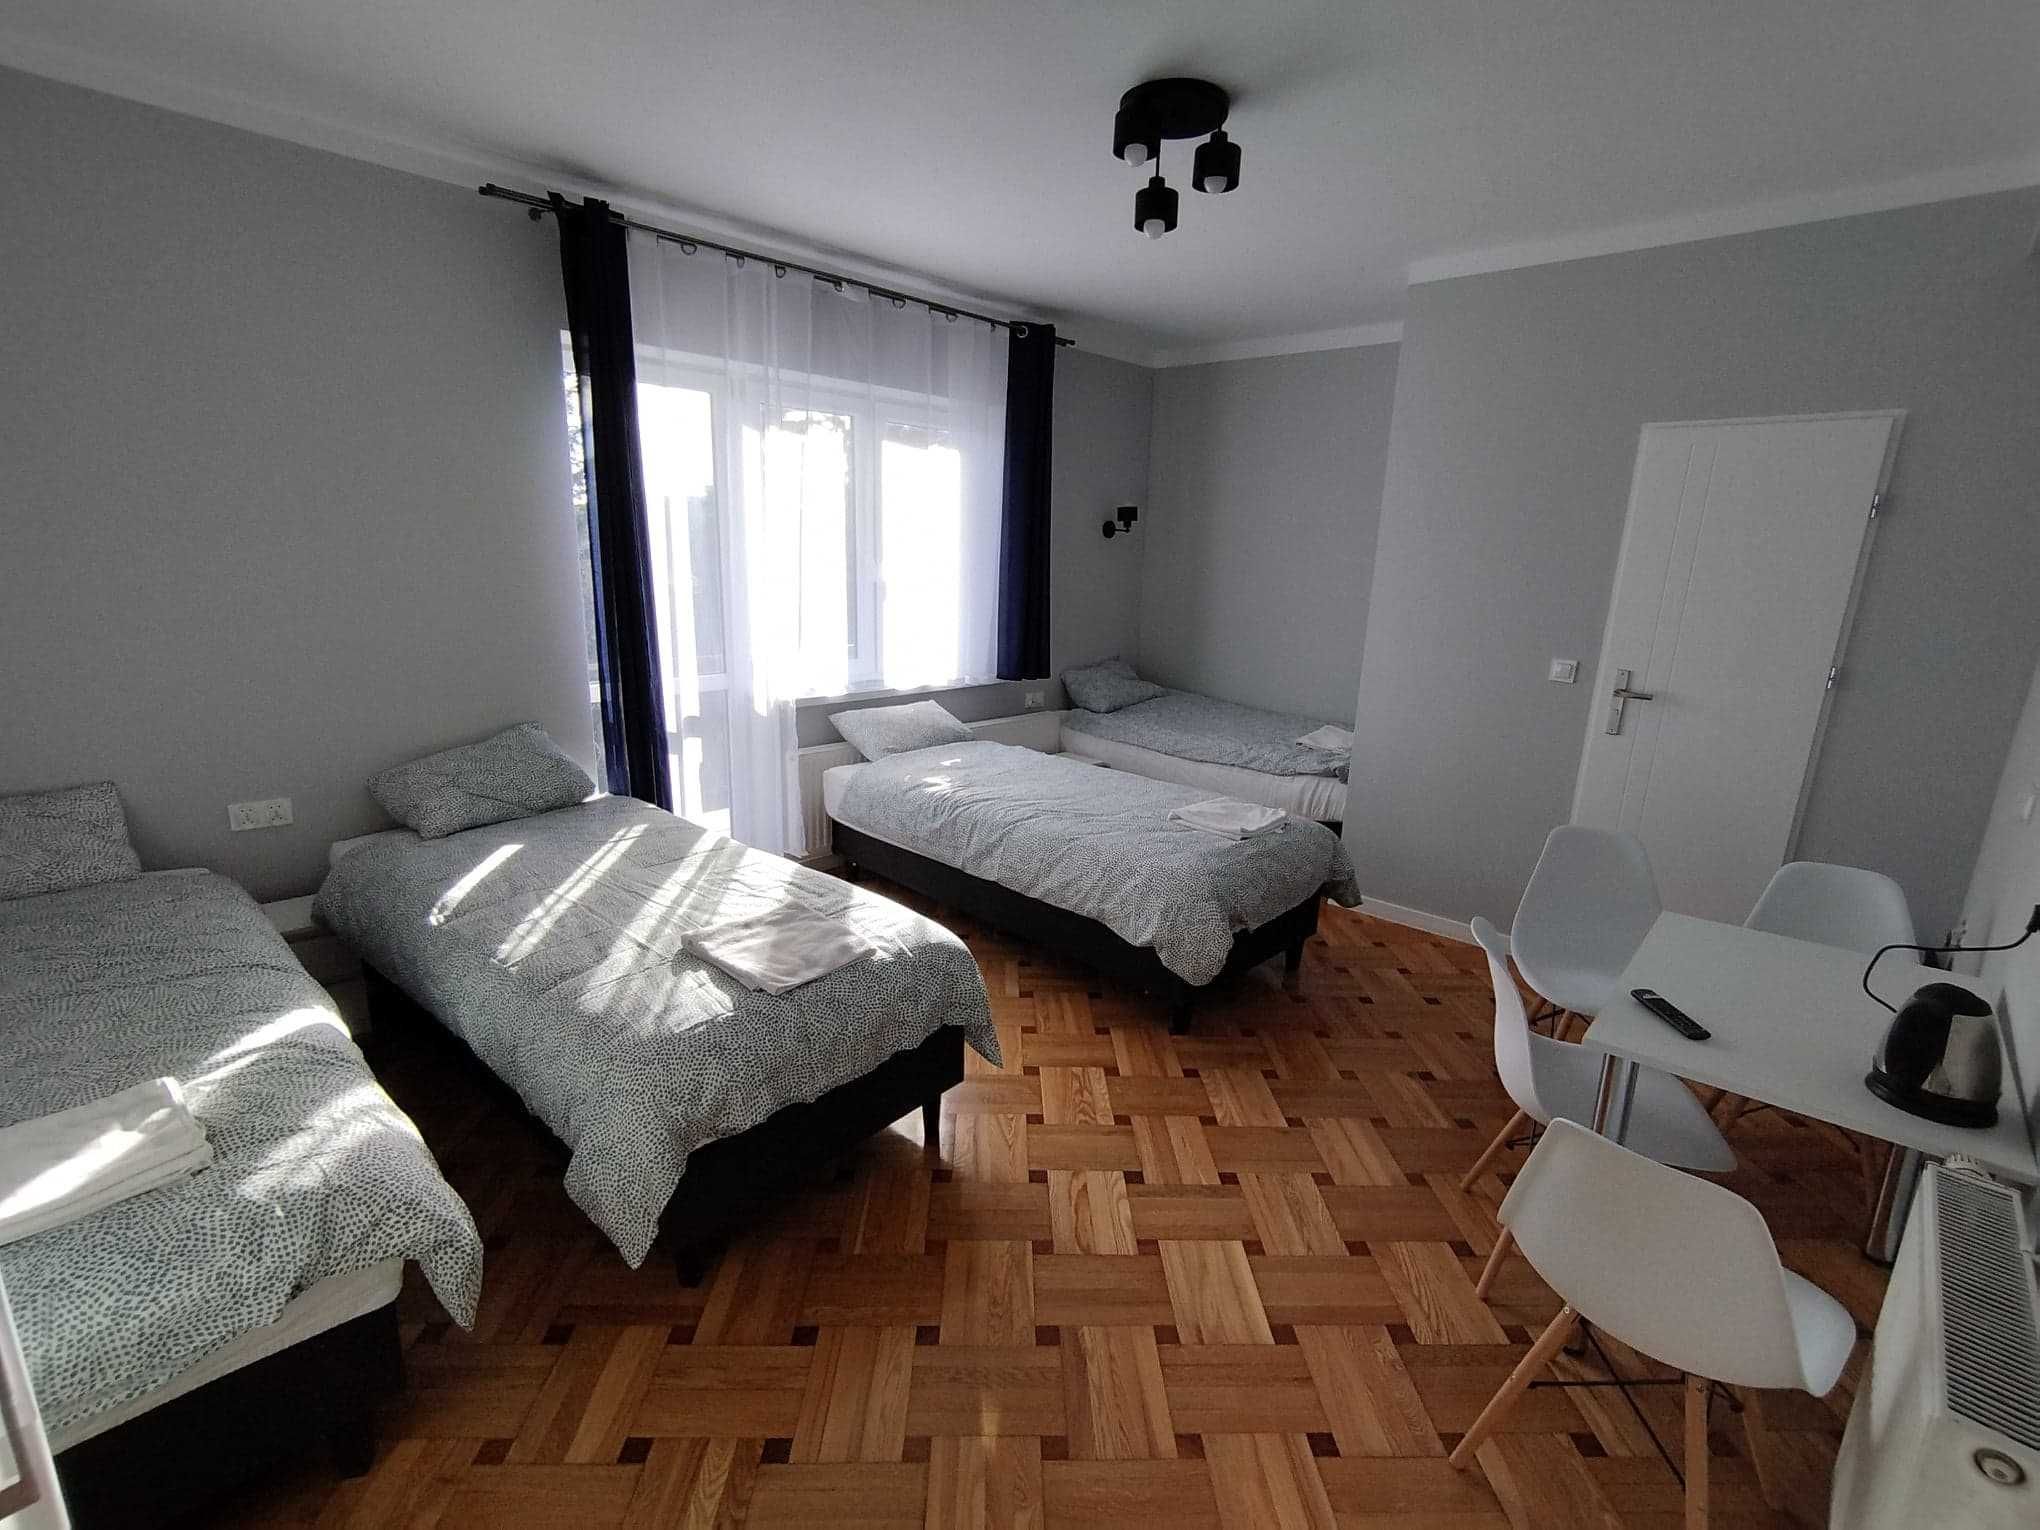 Pokoje gościnne noclegi hostel kwatery wifi smartv50" lodówka